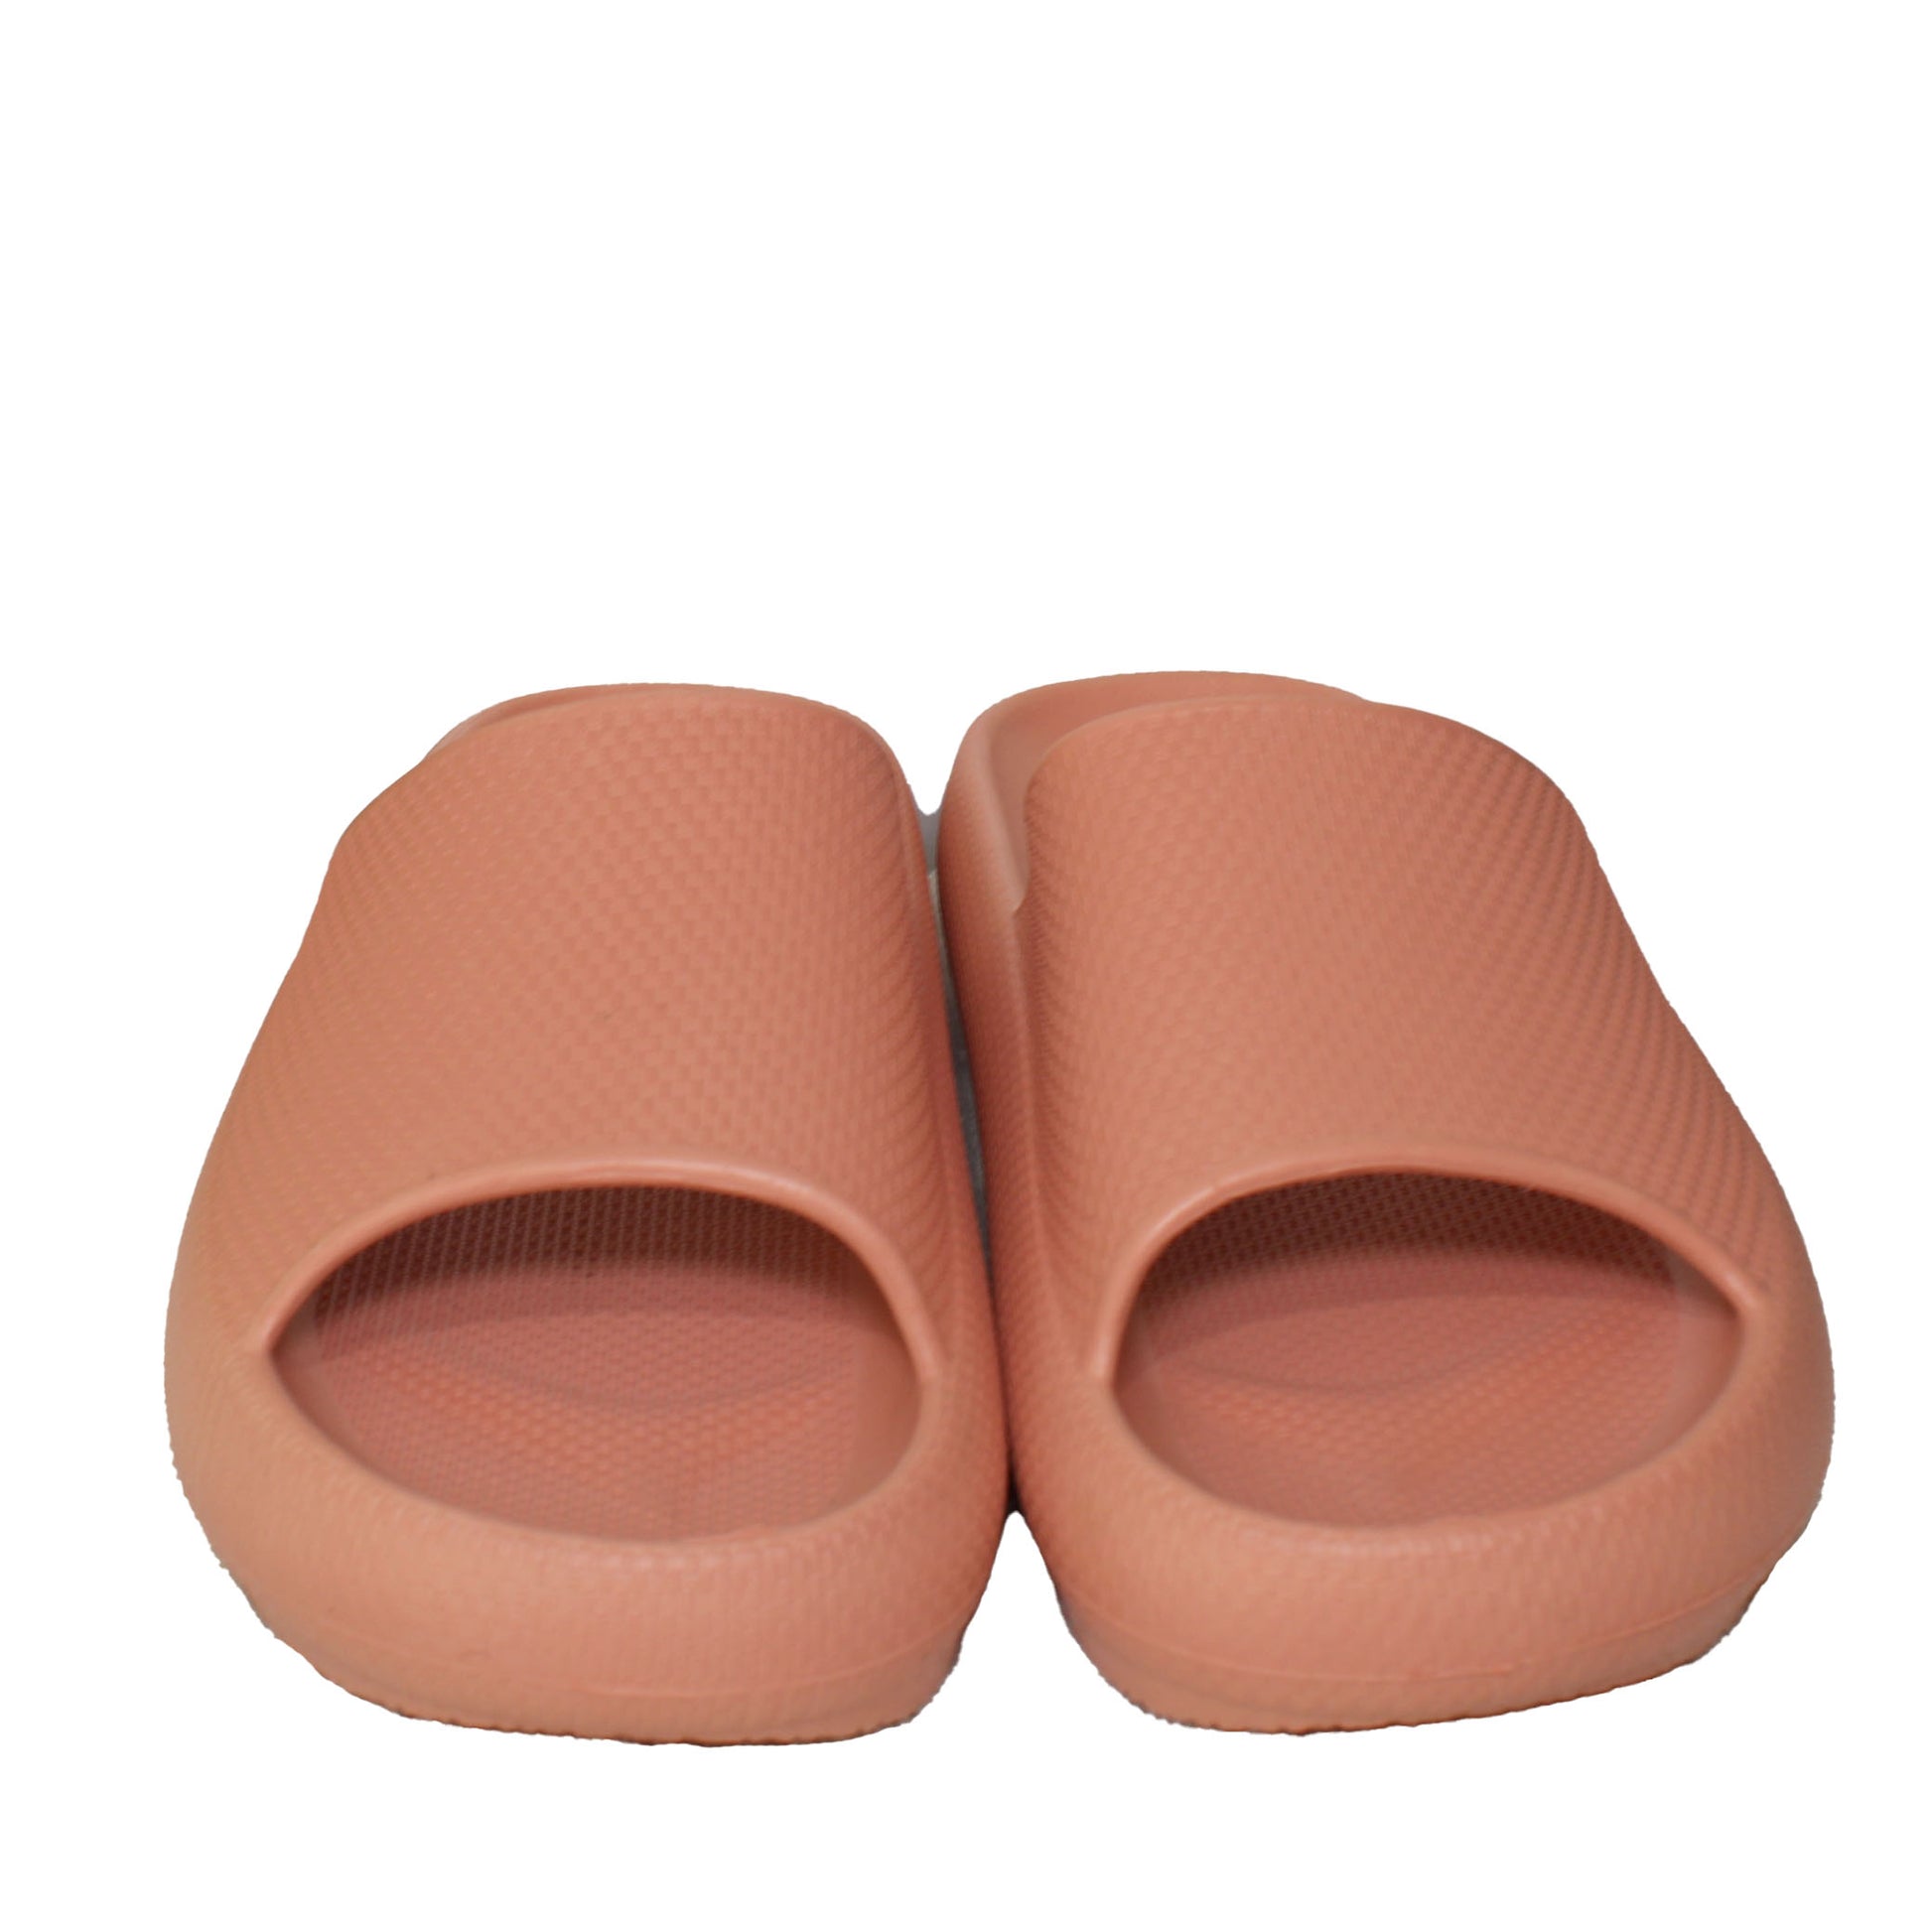 32 Degrees Unisex Cushion Slide Sandal